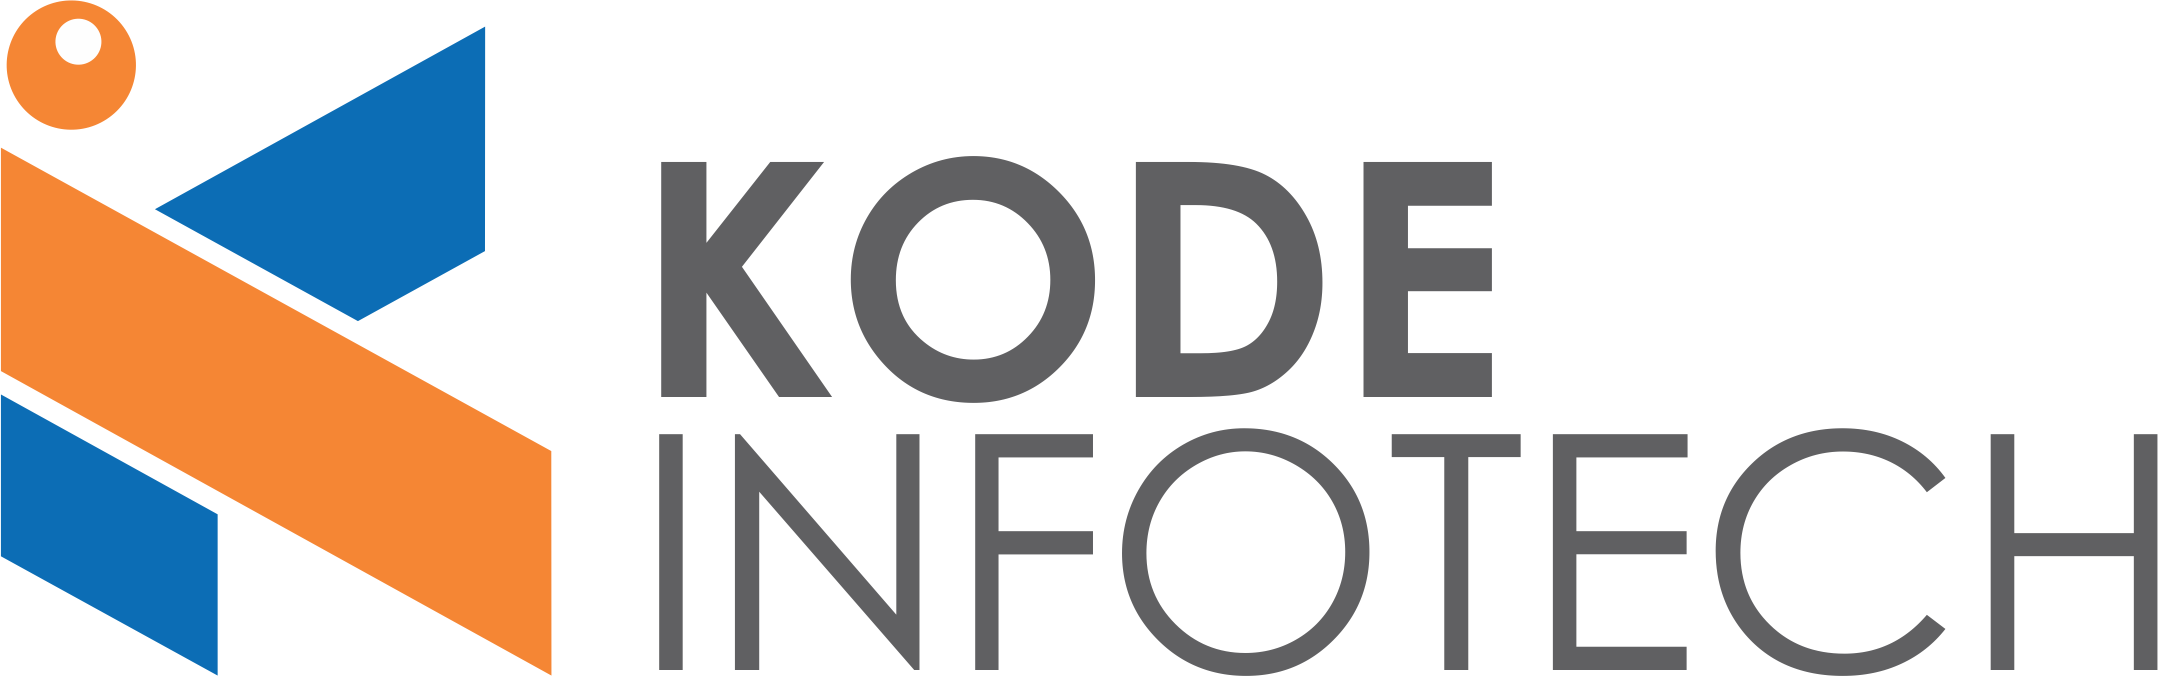 Kode Infotech профіль компаніі